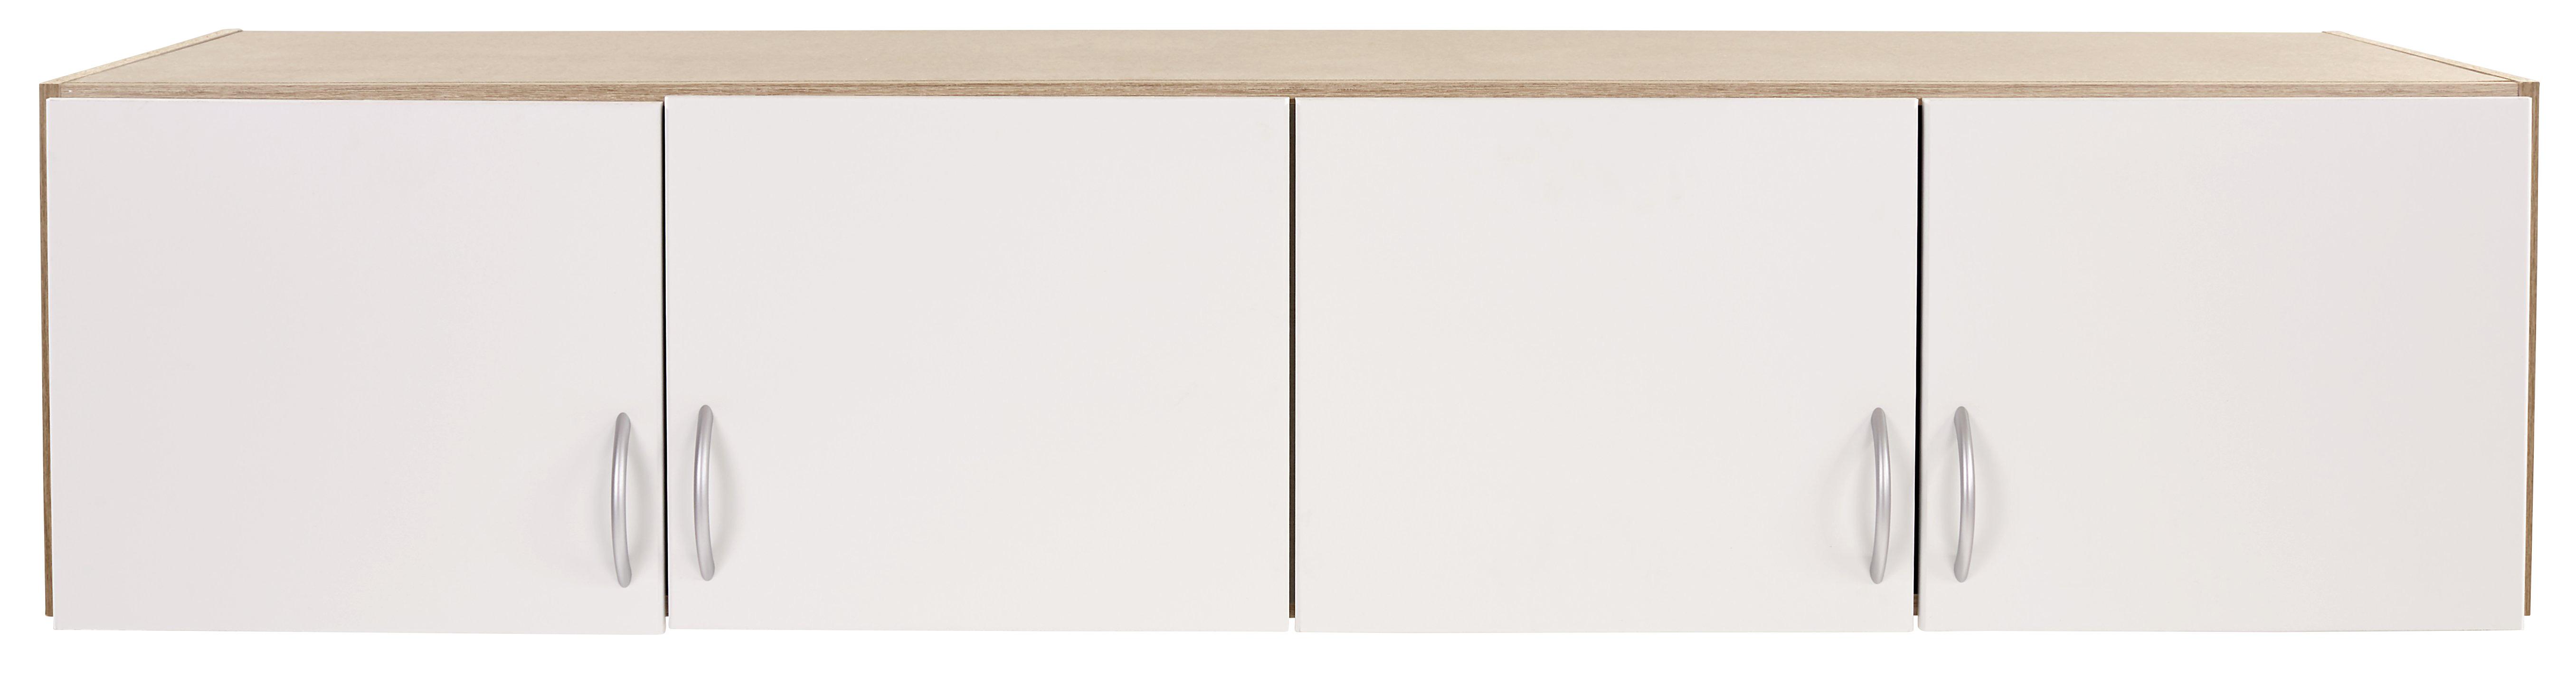 Dulap auxiliar superior Karo-extra - alb/culoare lemn stejar, Konventionell, material pe bază de lemn (181/39/54cm)